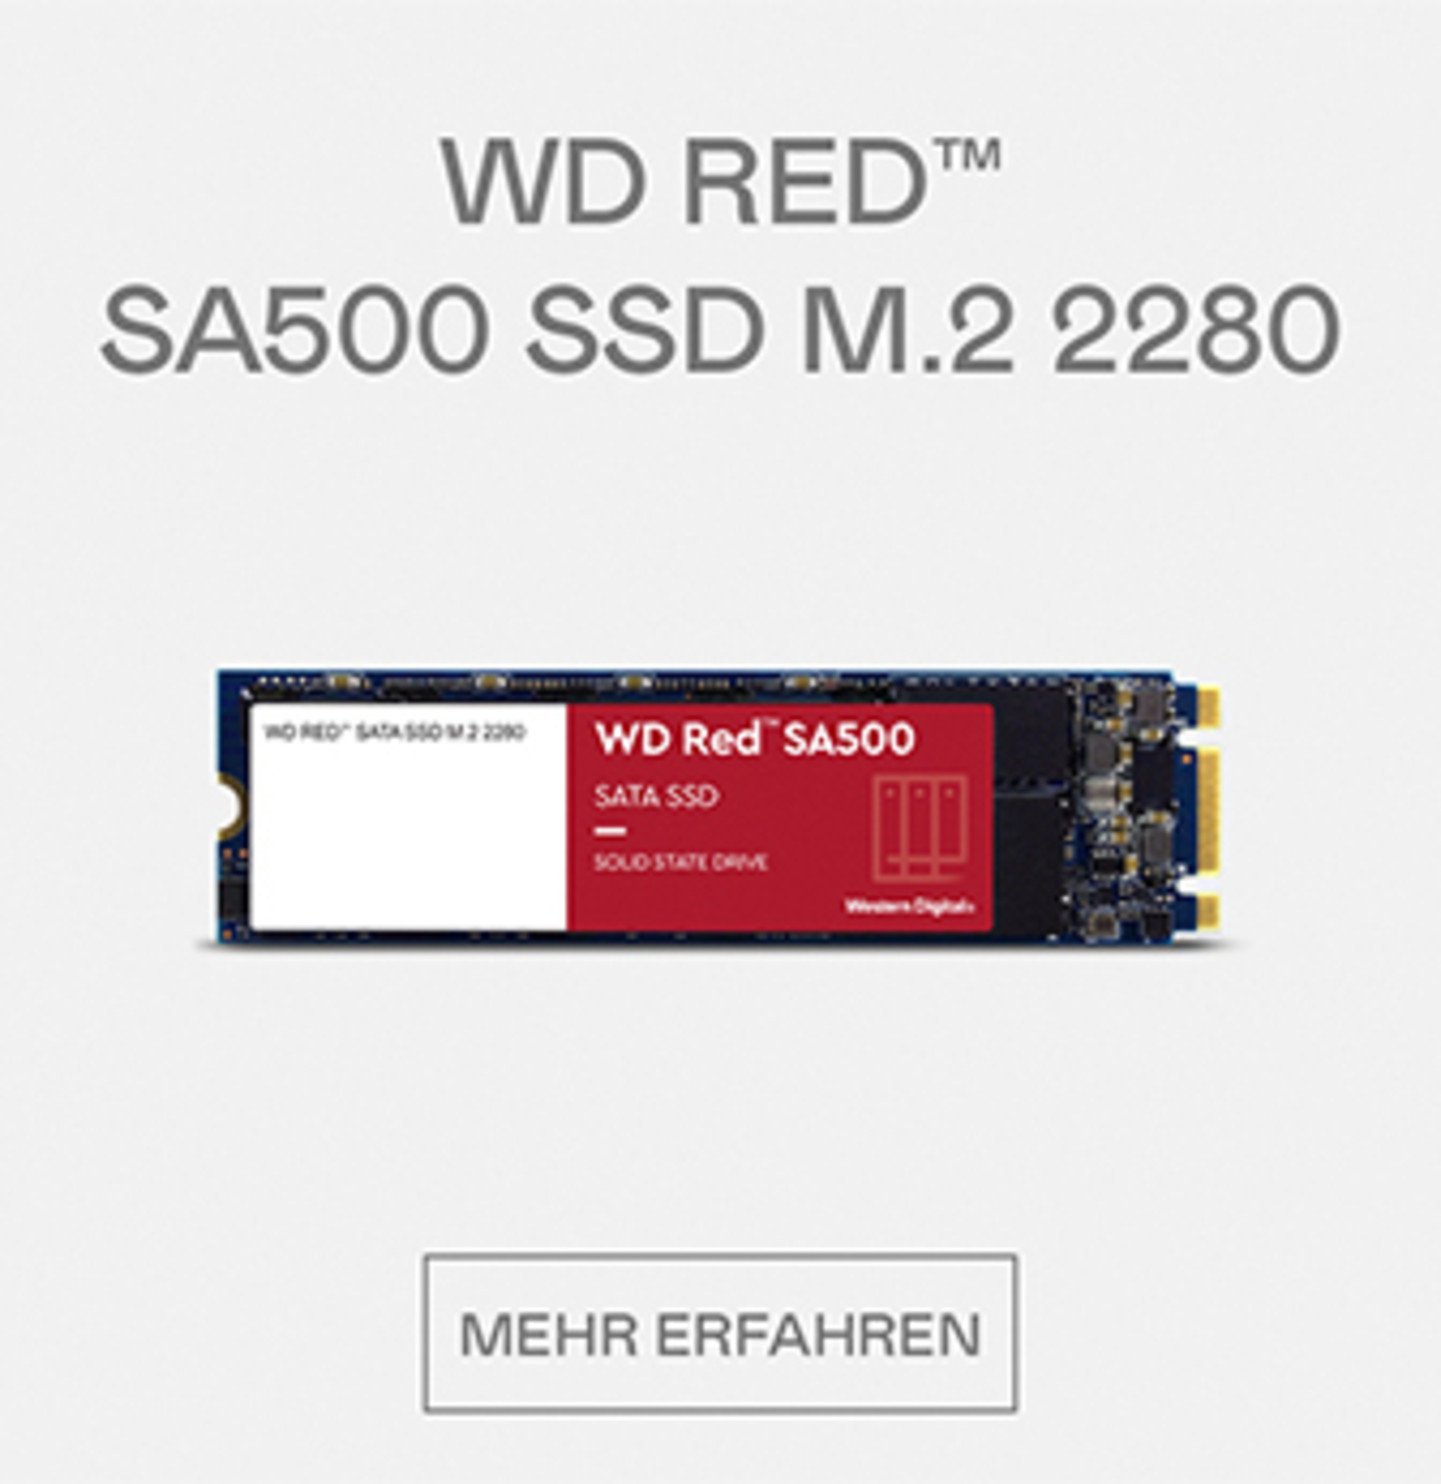 WD RED SA500 SSD M.2 2280